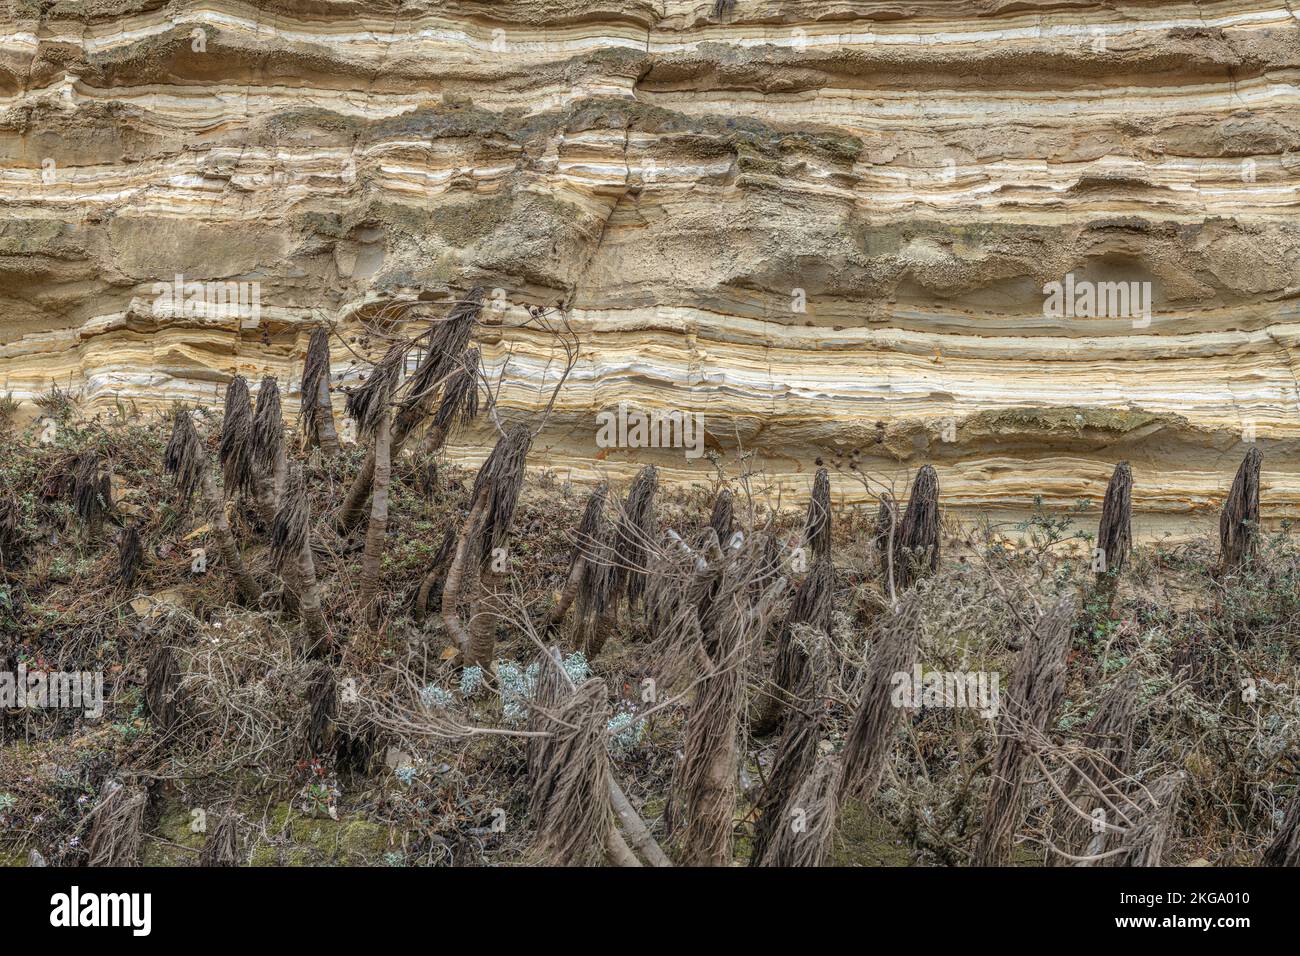 Cerca de un acantilado de arenisca con plantas de yuca muertas en su base, parte del ecosistema de la isla Santa Rosa en California. Foto de stock